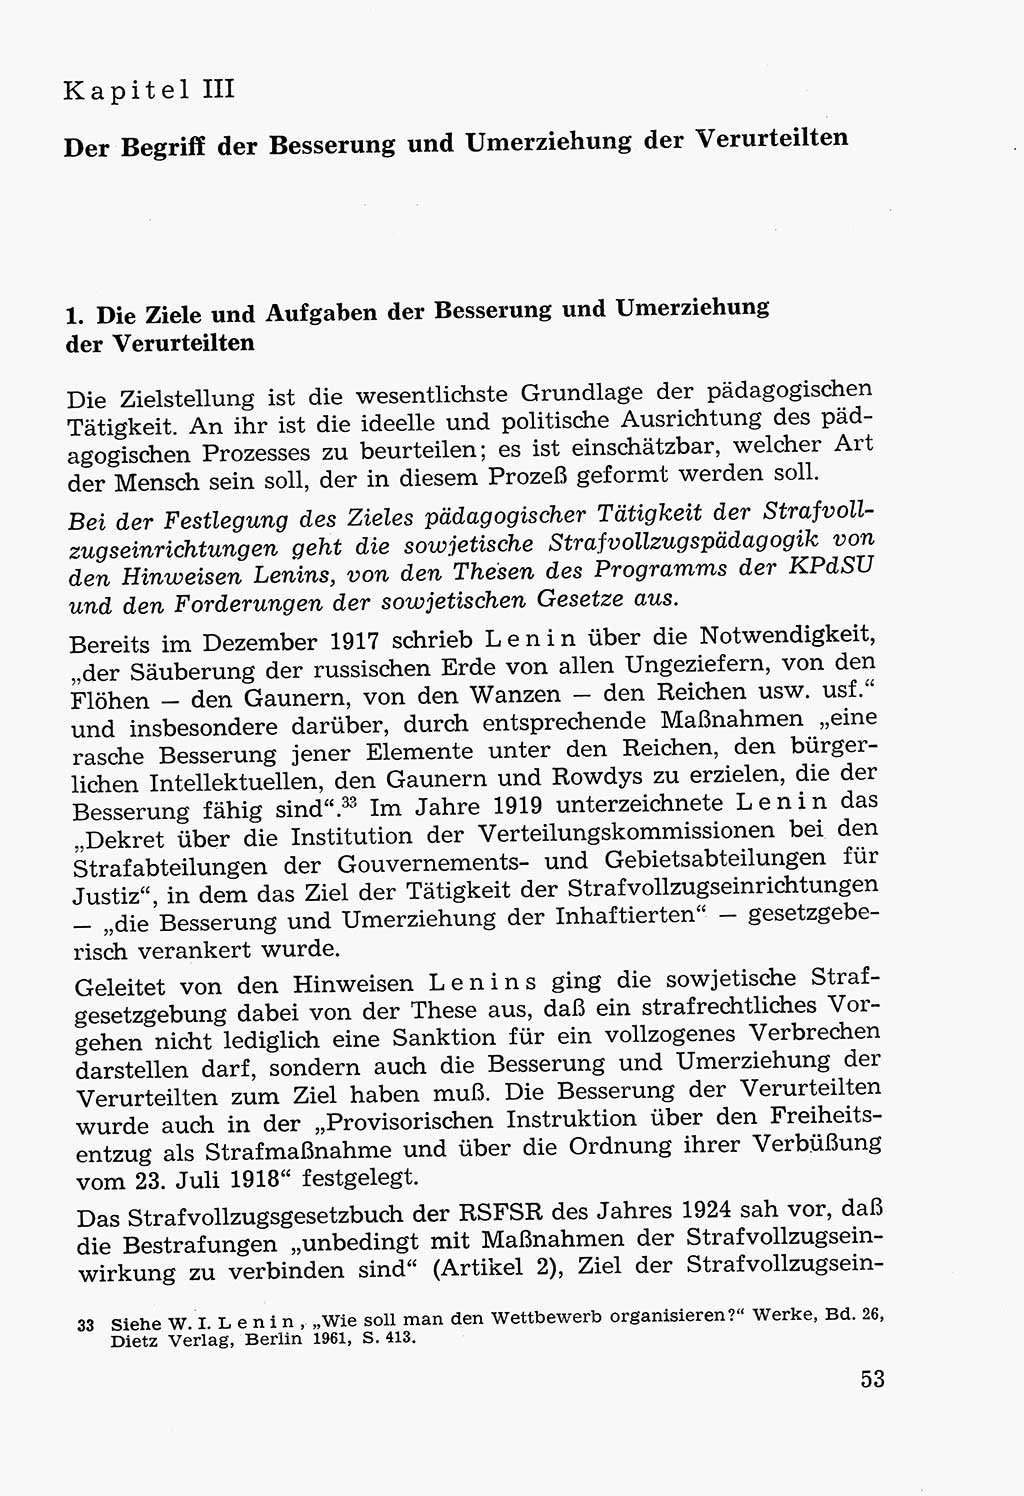 Lehrbuch der Strafvollzugspädagogik [Deutsche Demokratische Republik (DDR)] 1969, Seite 53 (Lb. SV-Pd. DDR 1969, S. 53)